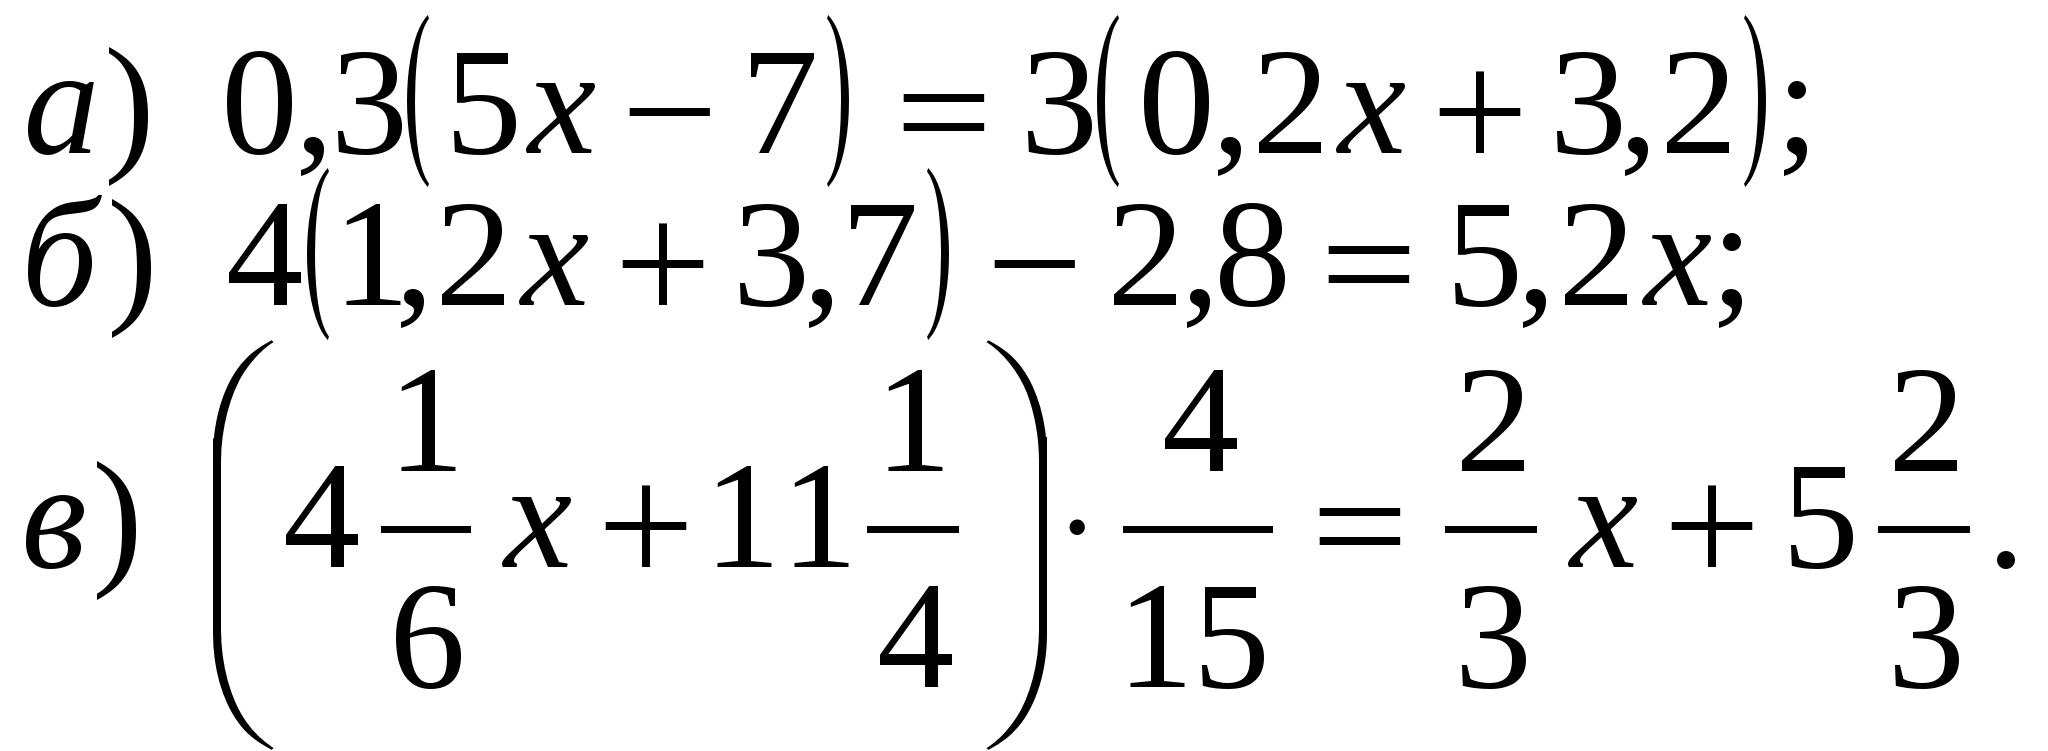 Математика 6 класс примеры для тренировки. Сложные уравнения 6 класс. 6 Класс математика уравнения сложные. Уравнения 6 класс по математике. Математика 6 класс уравнения.